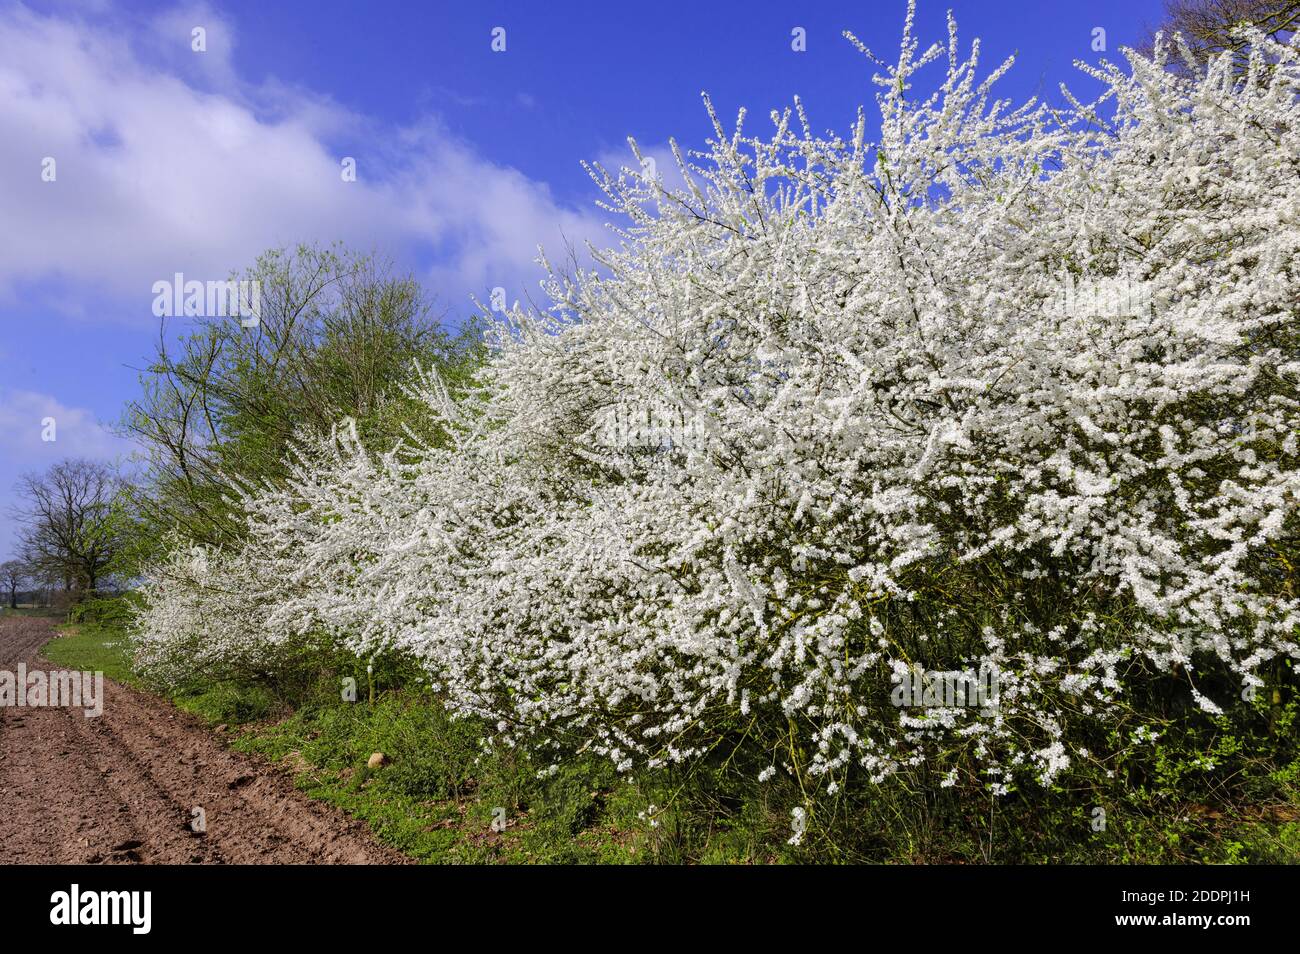 blackthorn, sloe (Prunus spinosa), blooming sloe hedge, Germany, Lower Saxony, Oldenburger Muensterland Stock Photo